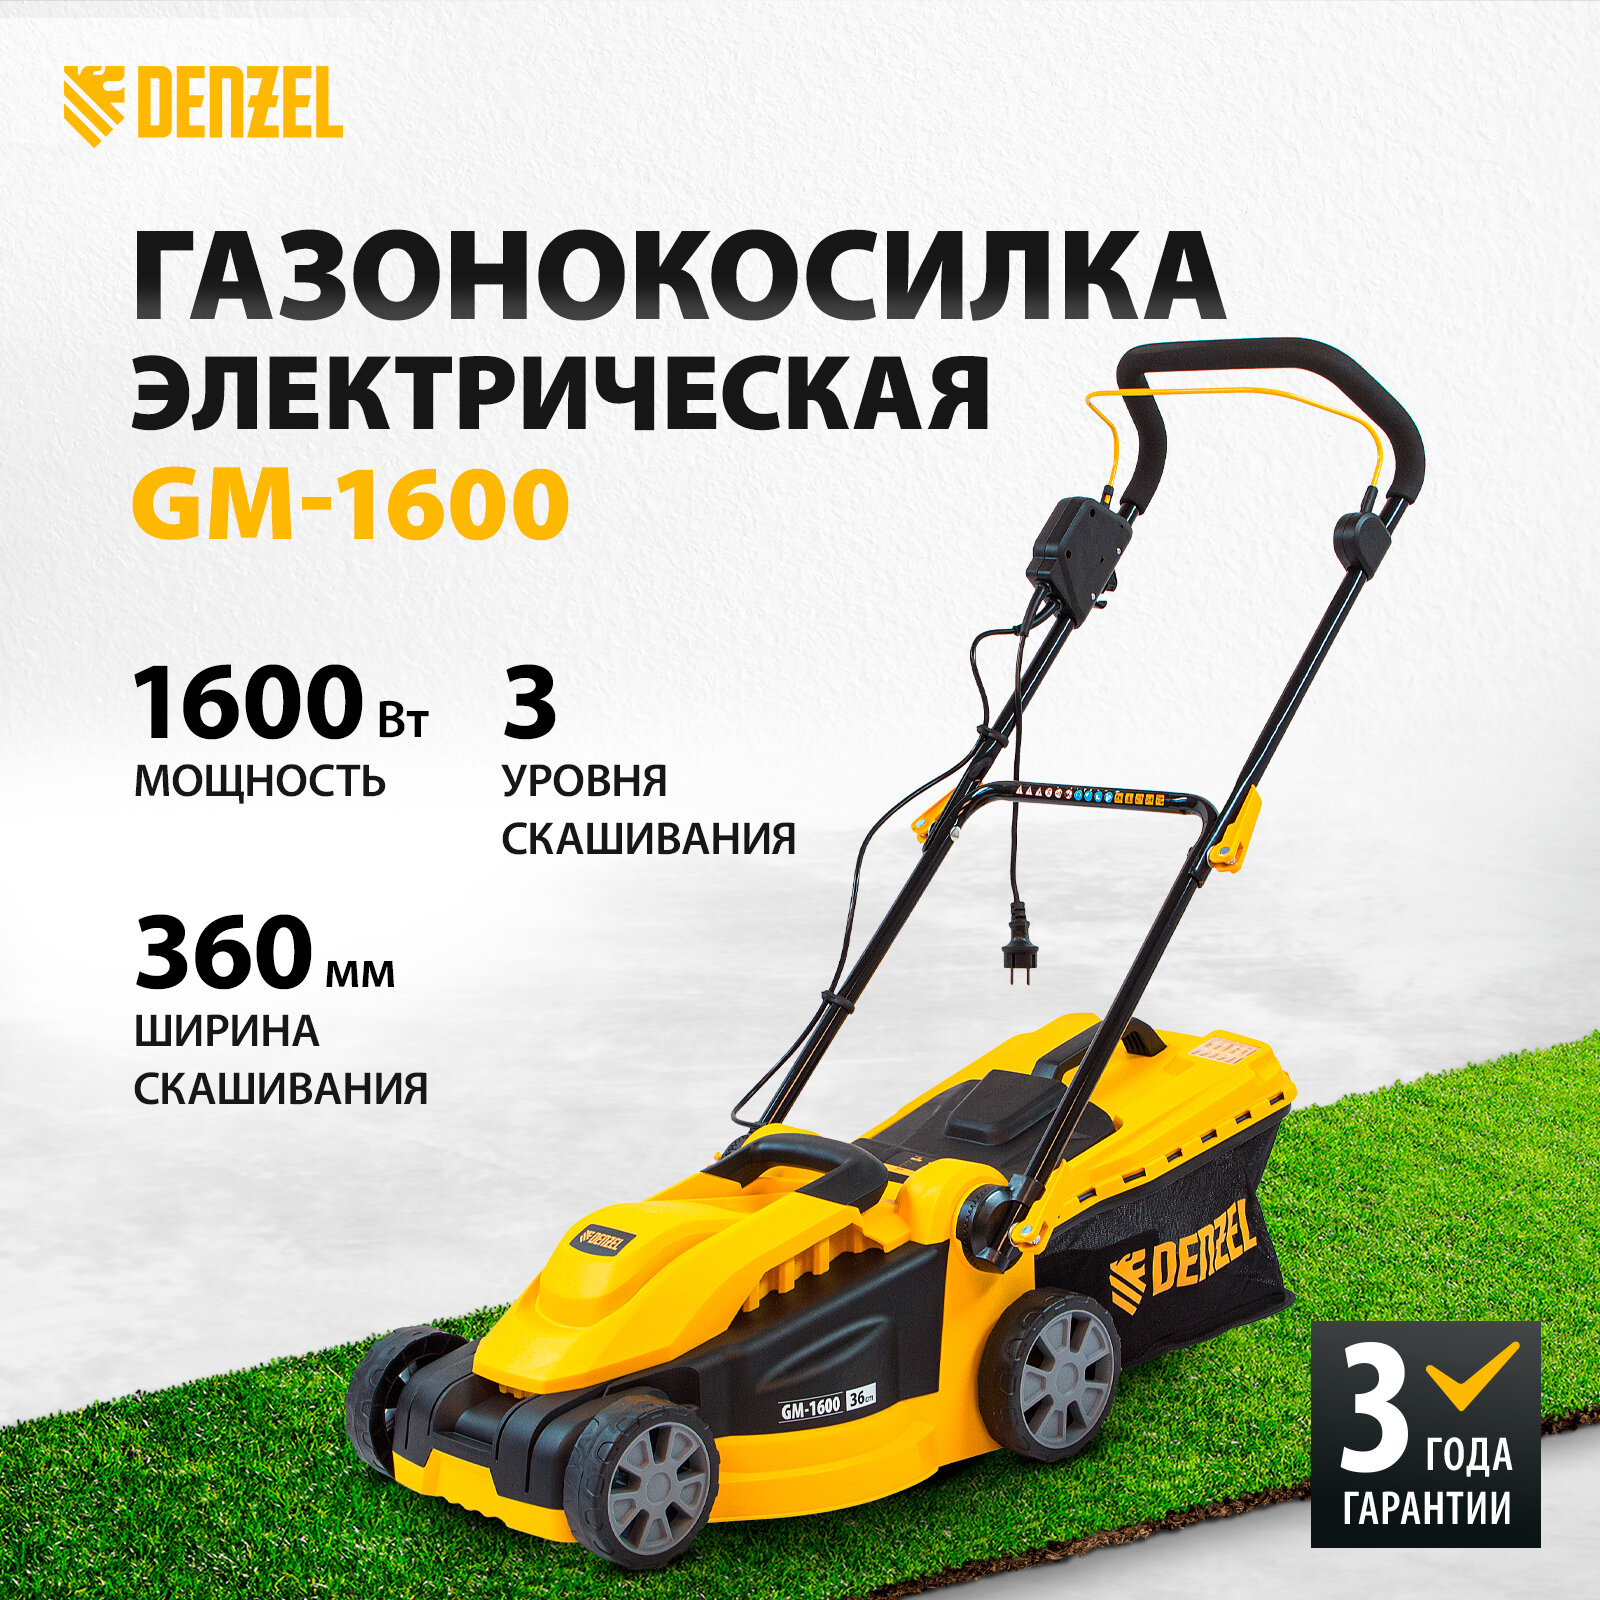 Denzel Газонокосилка электрическая GM-1600, 1600 Вт 96616